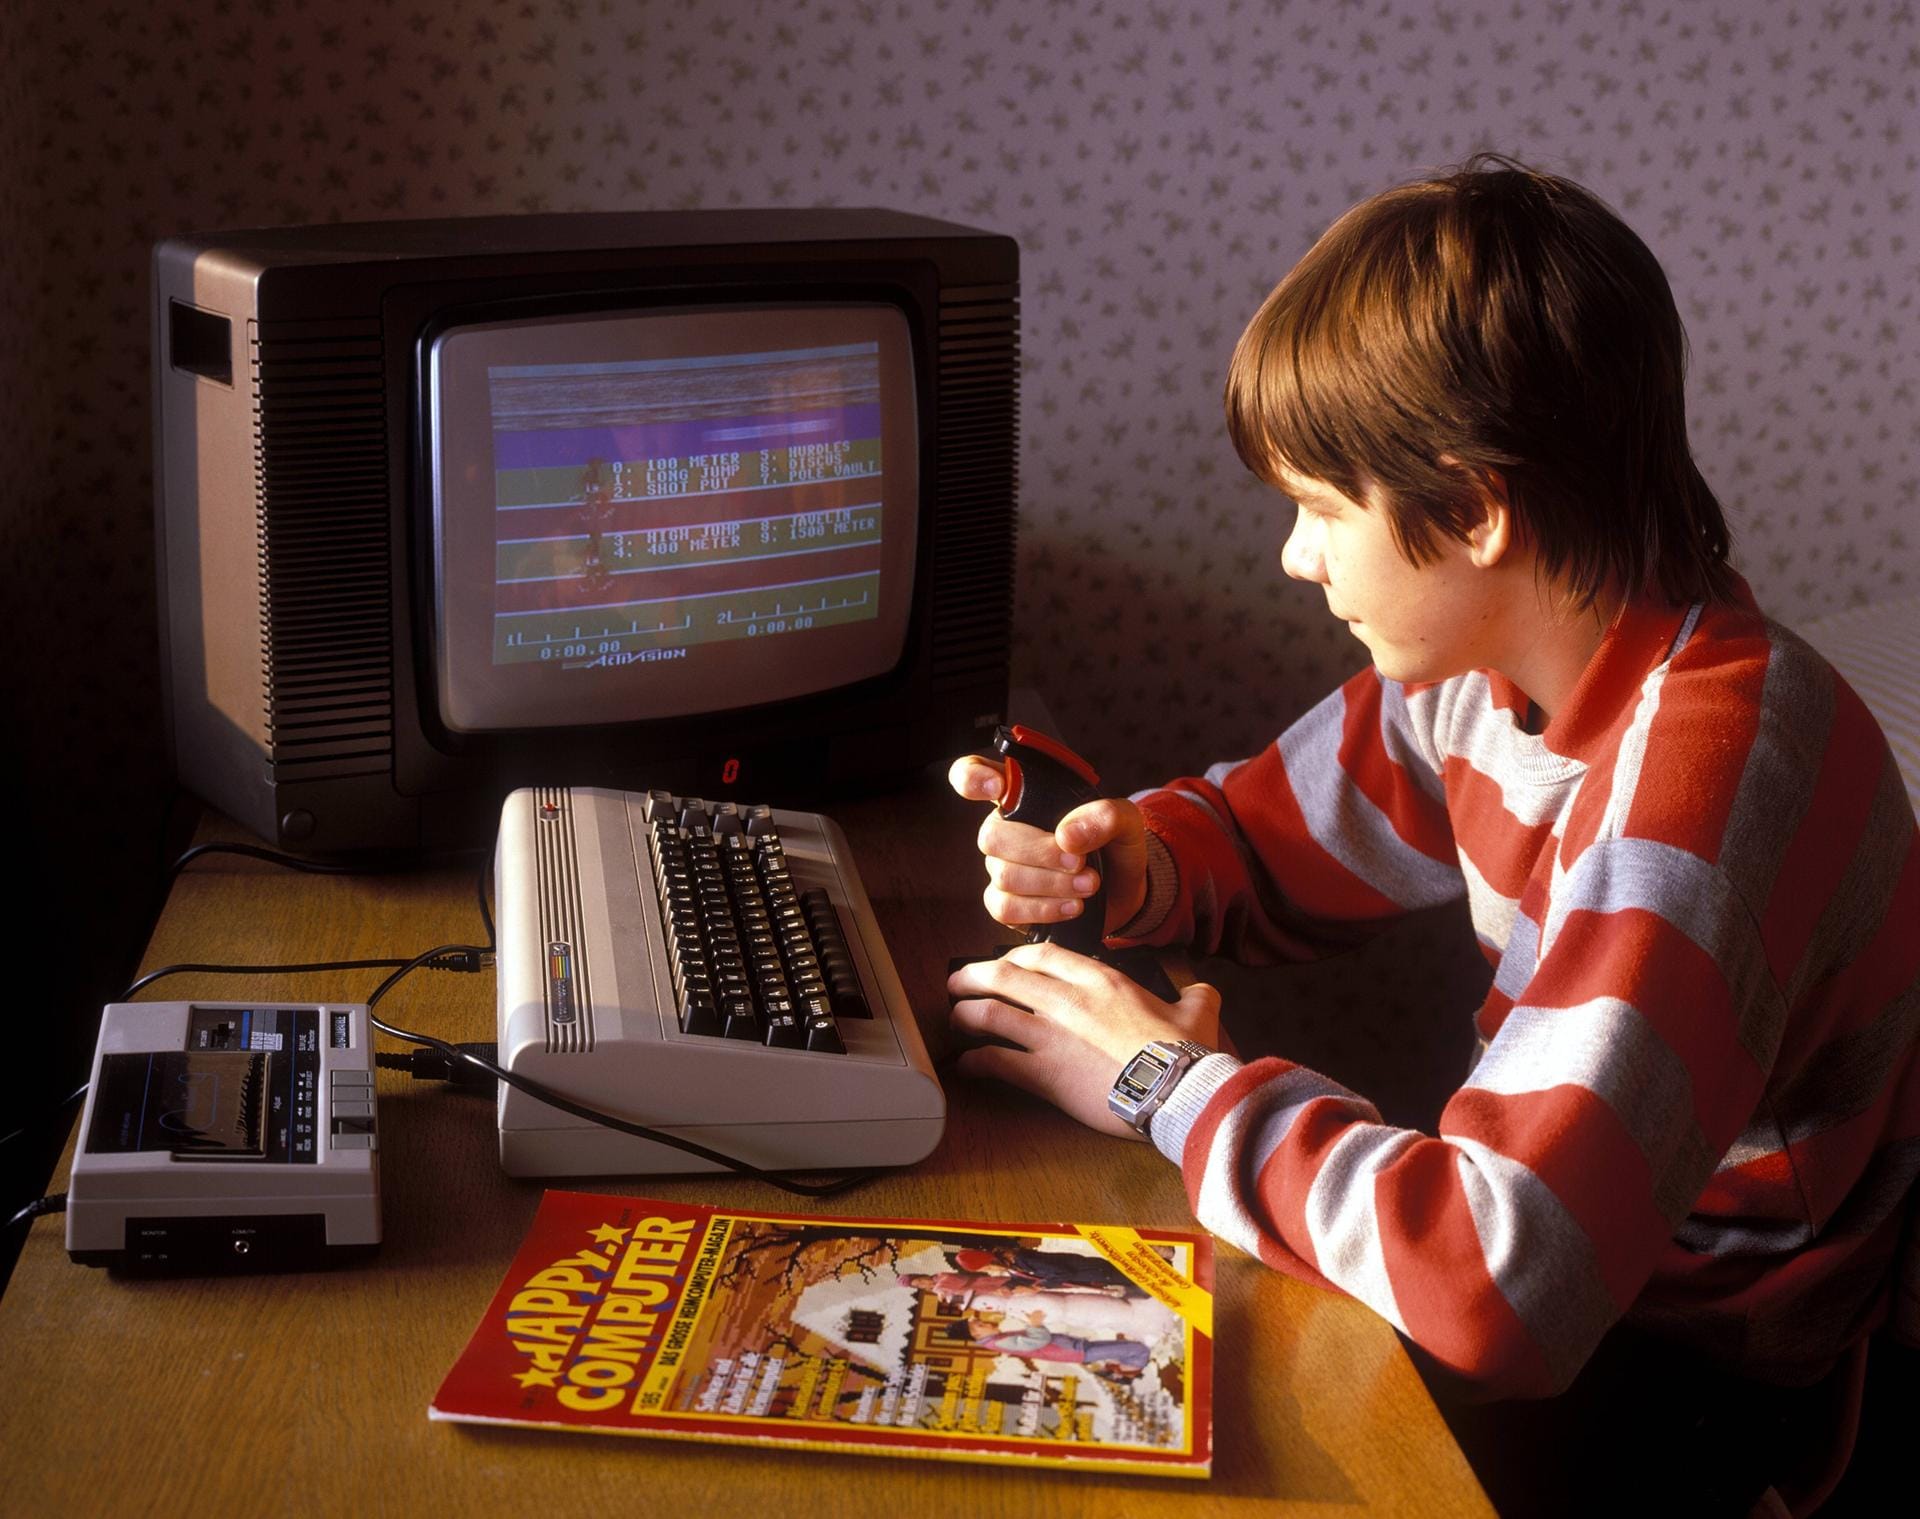 Der Commodore 64 aus dem Jahr 1982 gilt bis heute als der bestverkaufte Home Computer aller Zeiten. Aufgrund der hohen Stückzahl hat das Standardprodukt nur einen geringen Sammlerwert. Seltene Editions sind dagegen sehr gesucht.